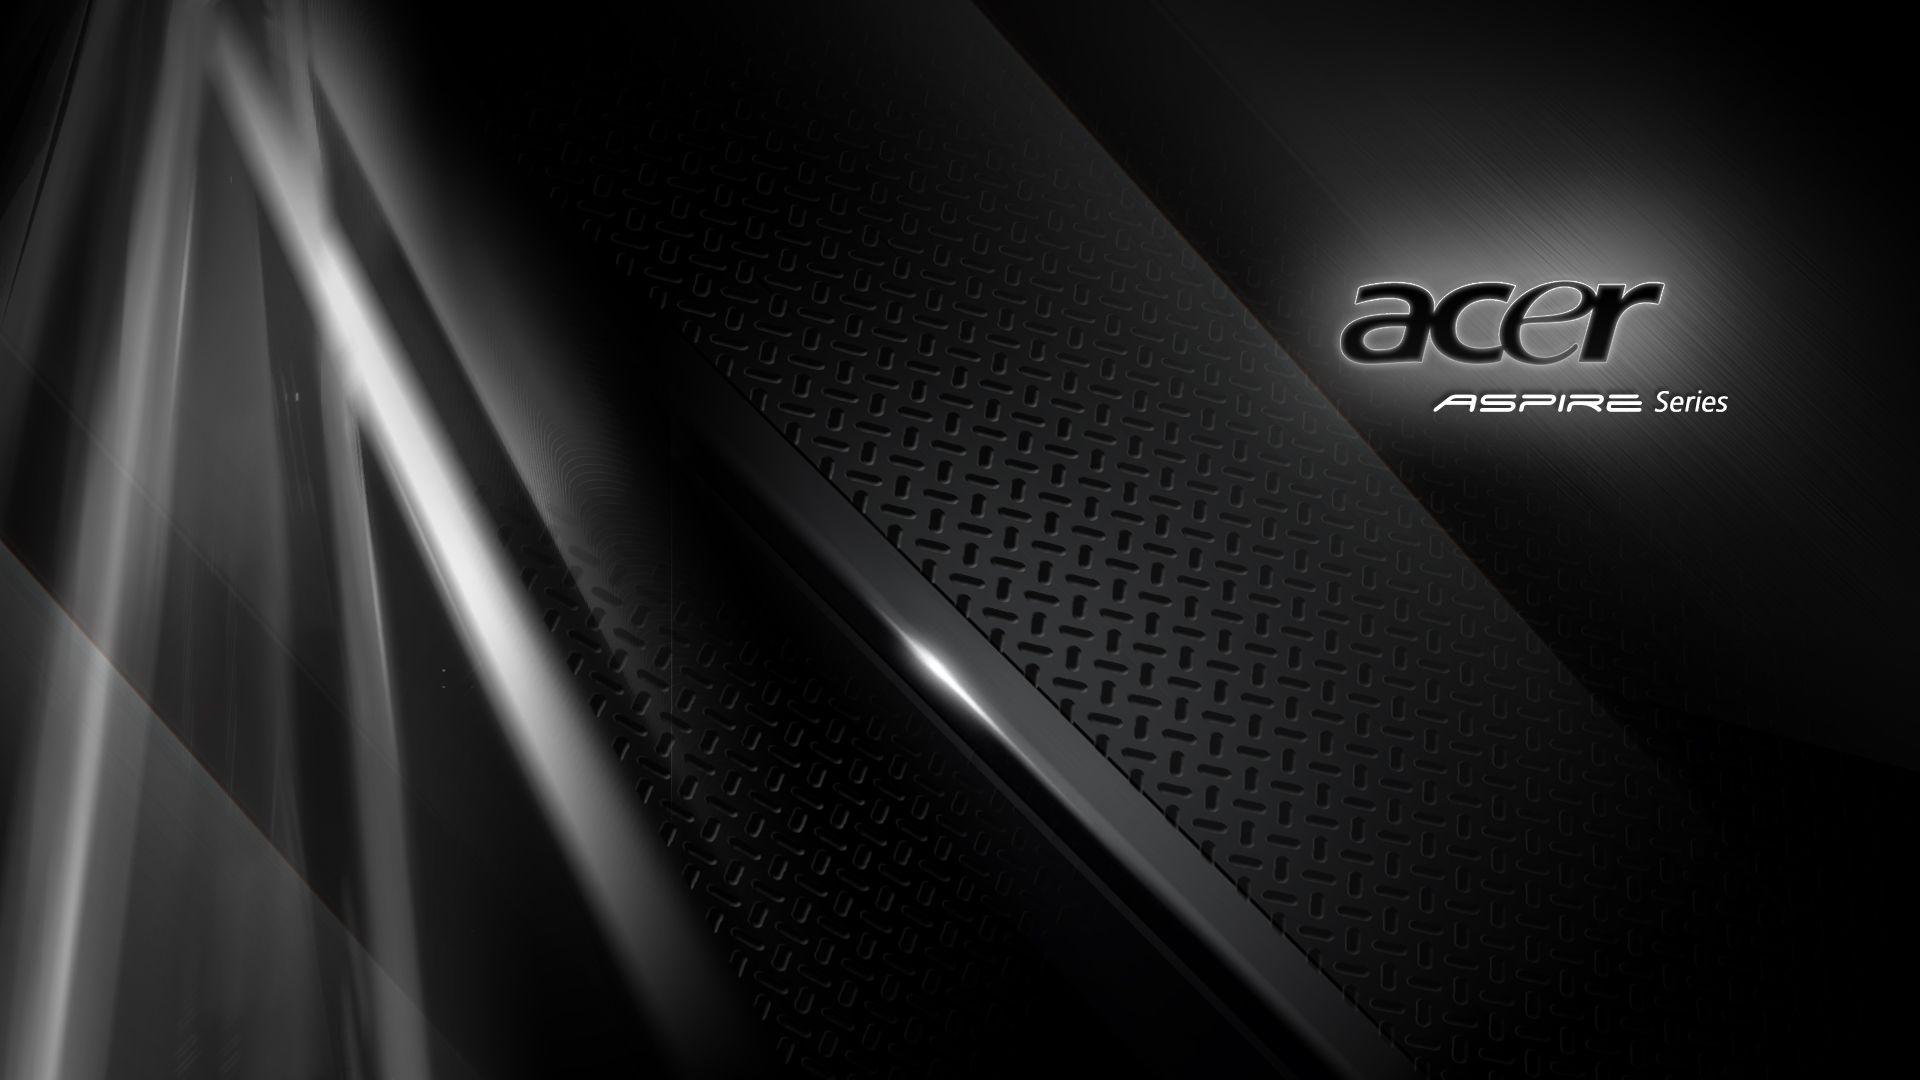 Harga Acer Aspire Z3 451 Terbaru Dan Spesifikasi Lengkap Di